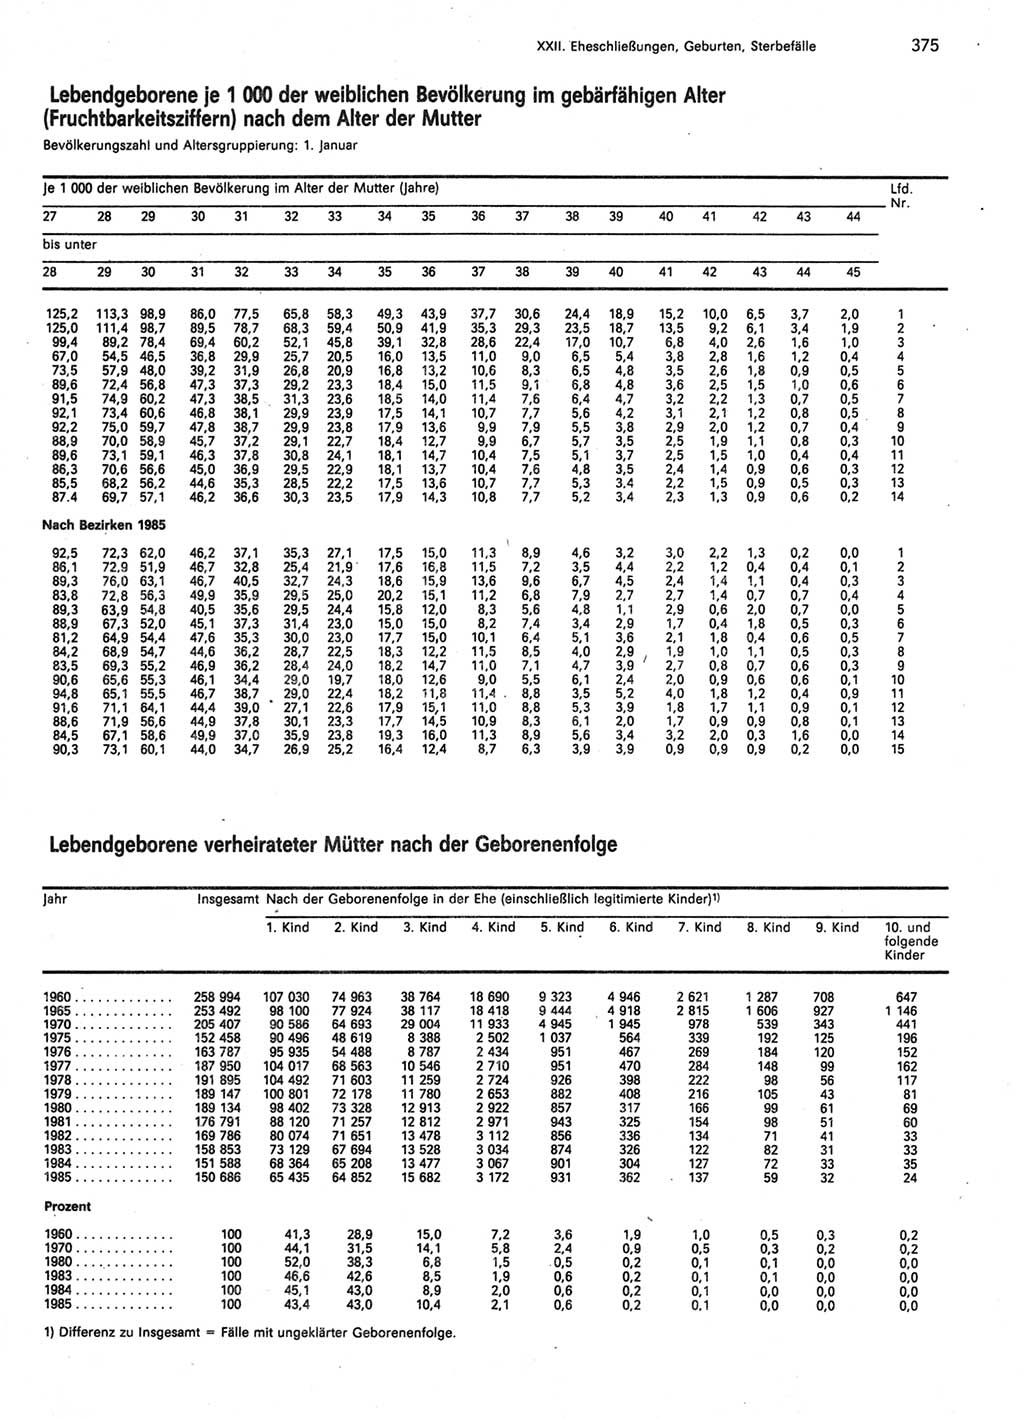 Statistisches Jahrbuch der Deutschen Demokratischen Republik (DDR) 1987, Seite 375 (Stat. Jb. DDR 1987, S. 375)